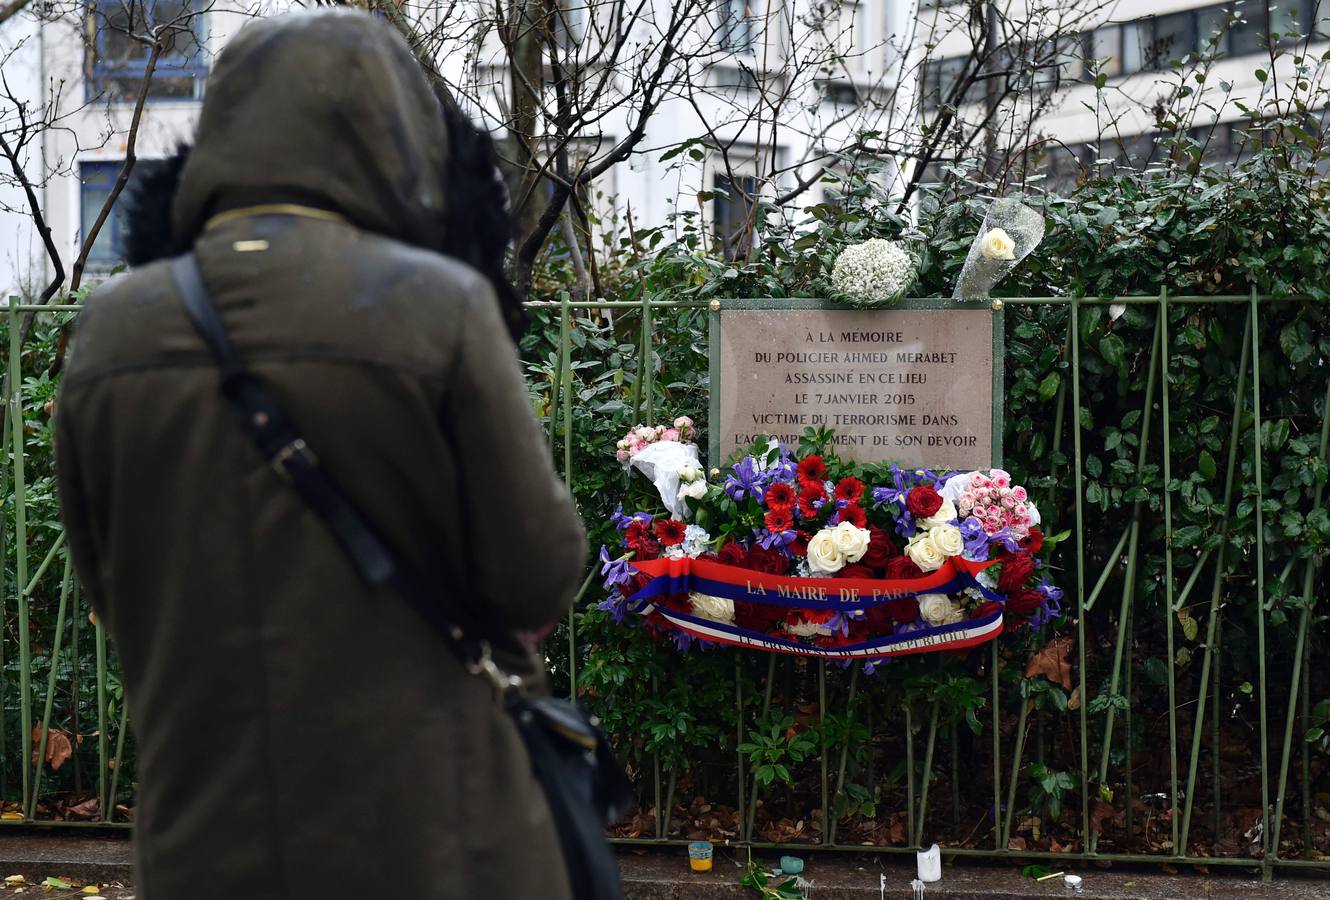 Los franceses conmemoran el aniversario de Charlie Hebdo con flores